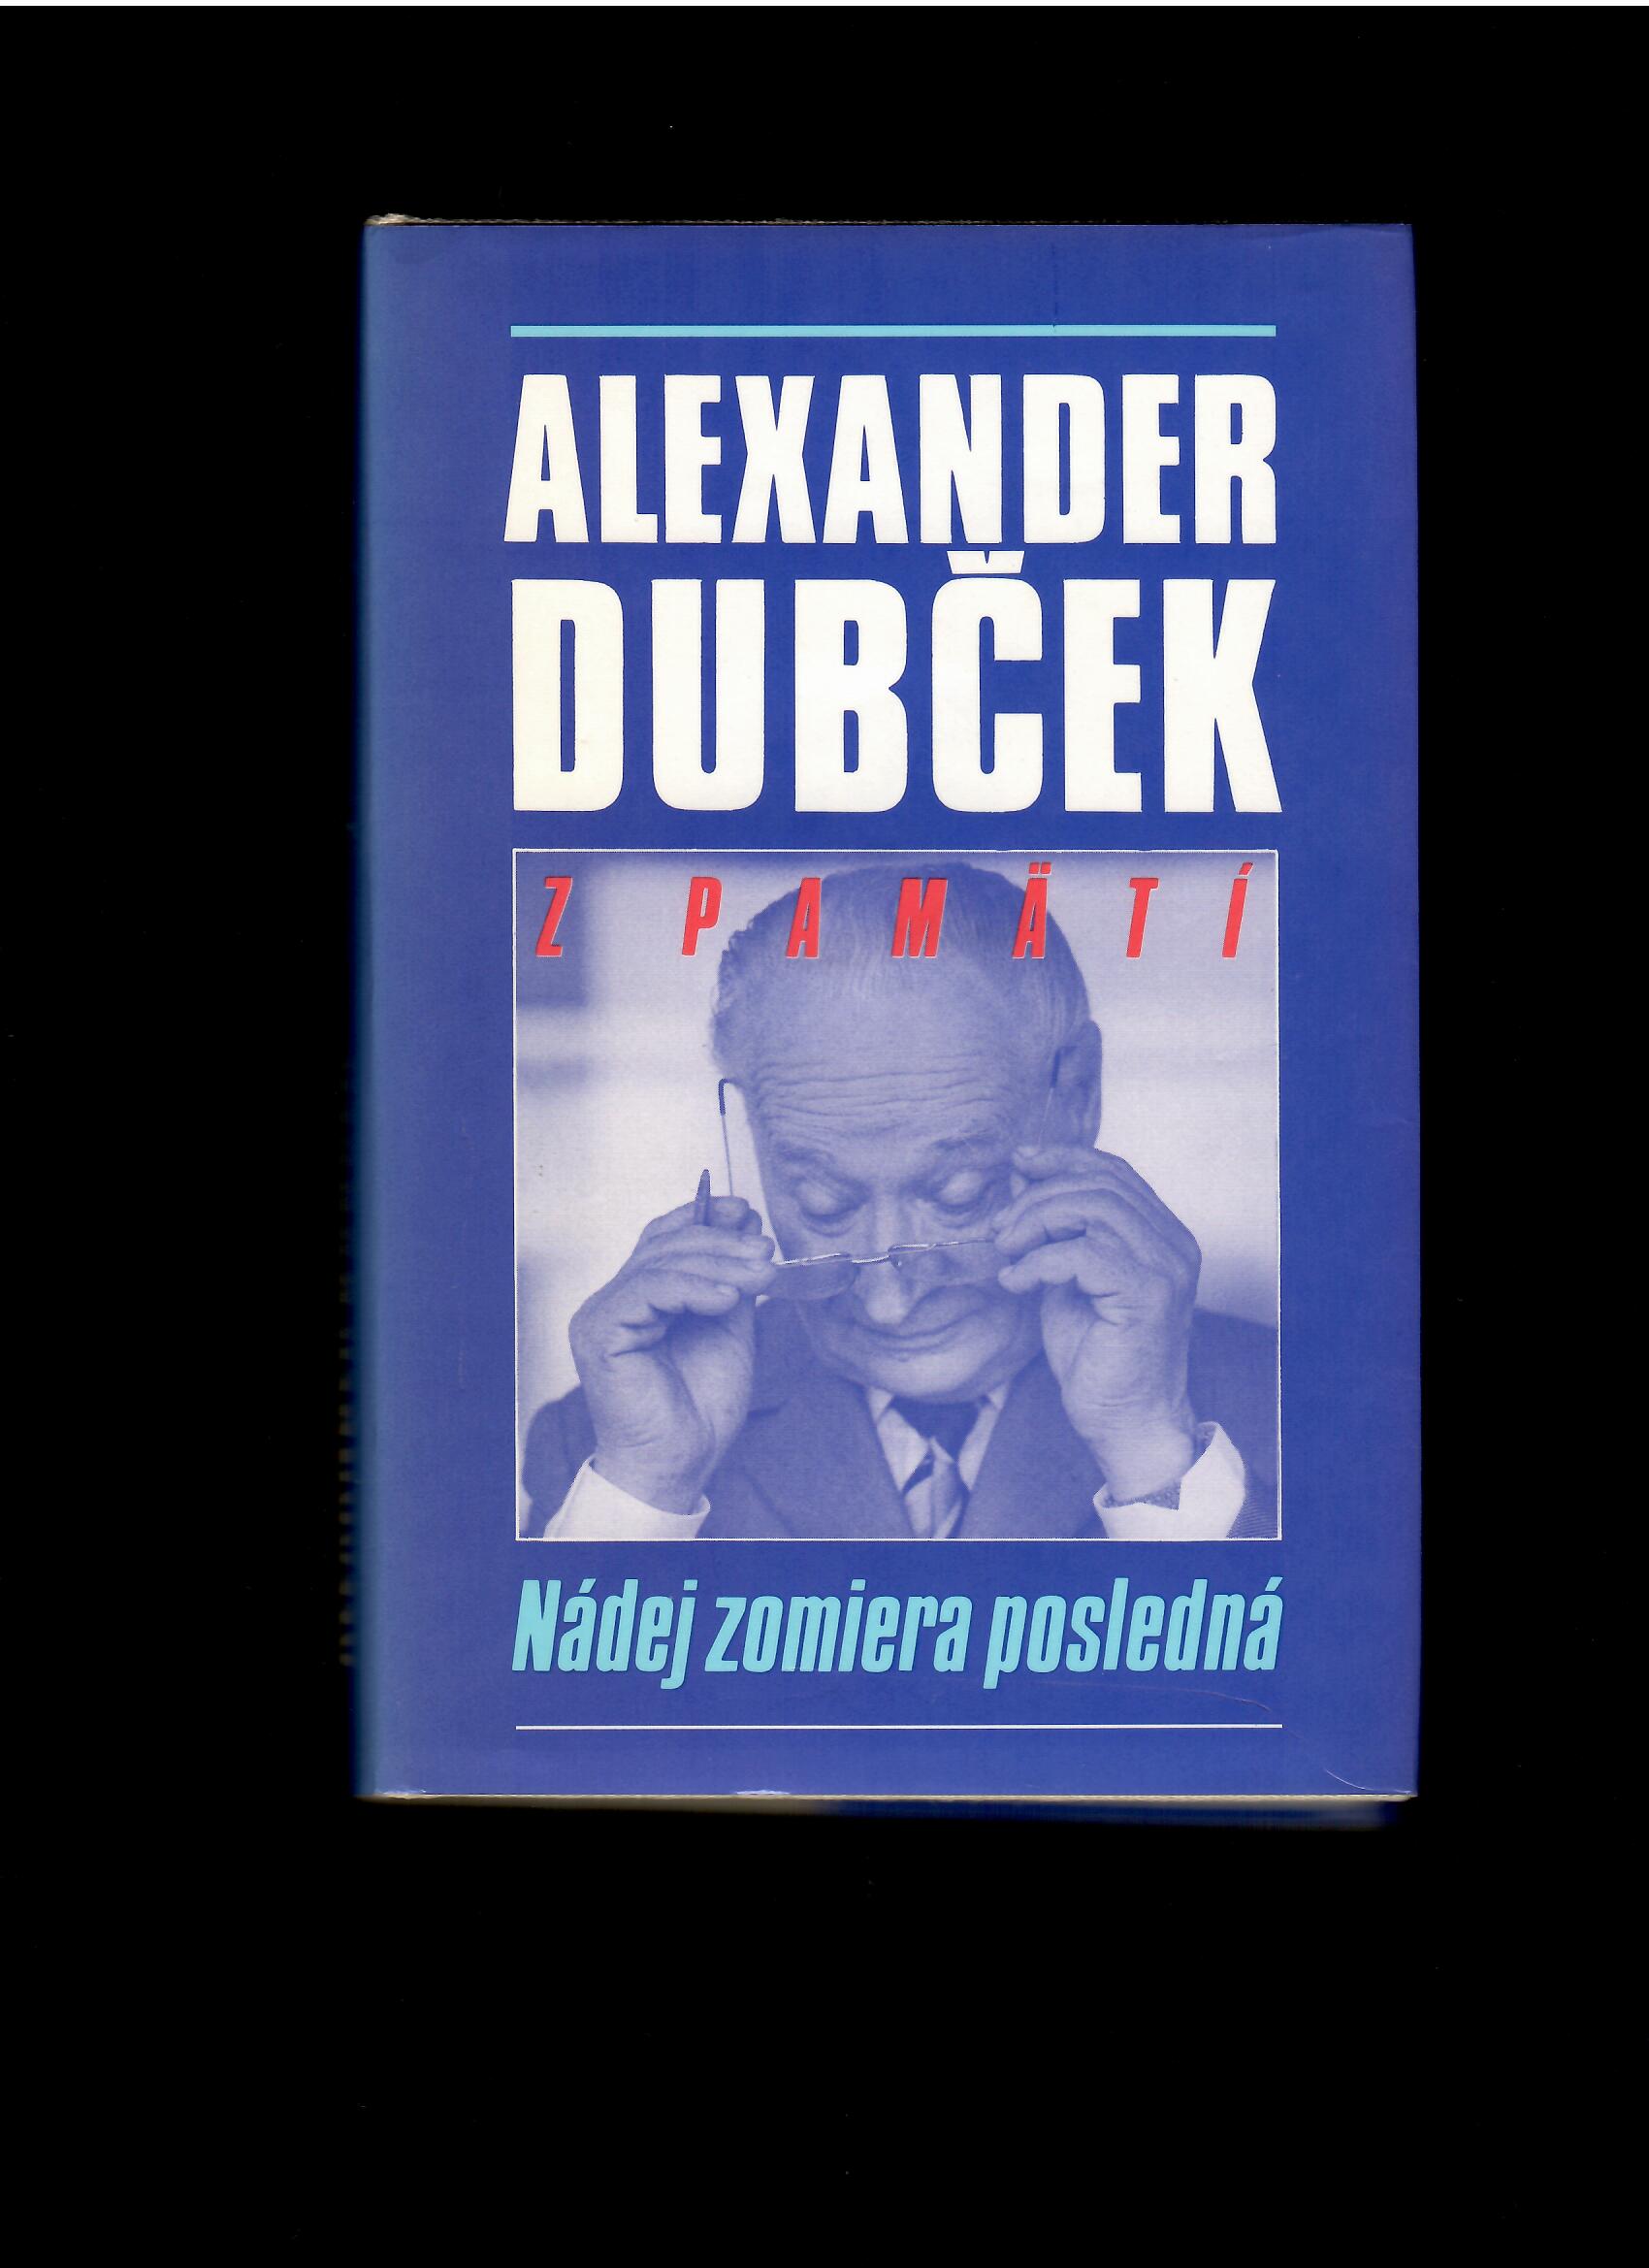 Alexander Dubček: Z pamätí. Nádej zomiera posledná